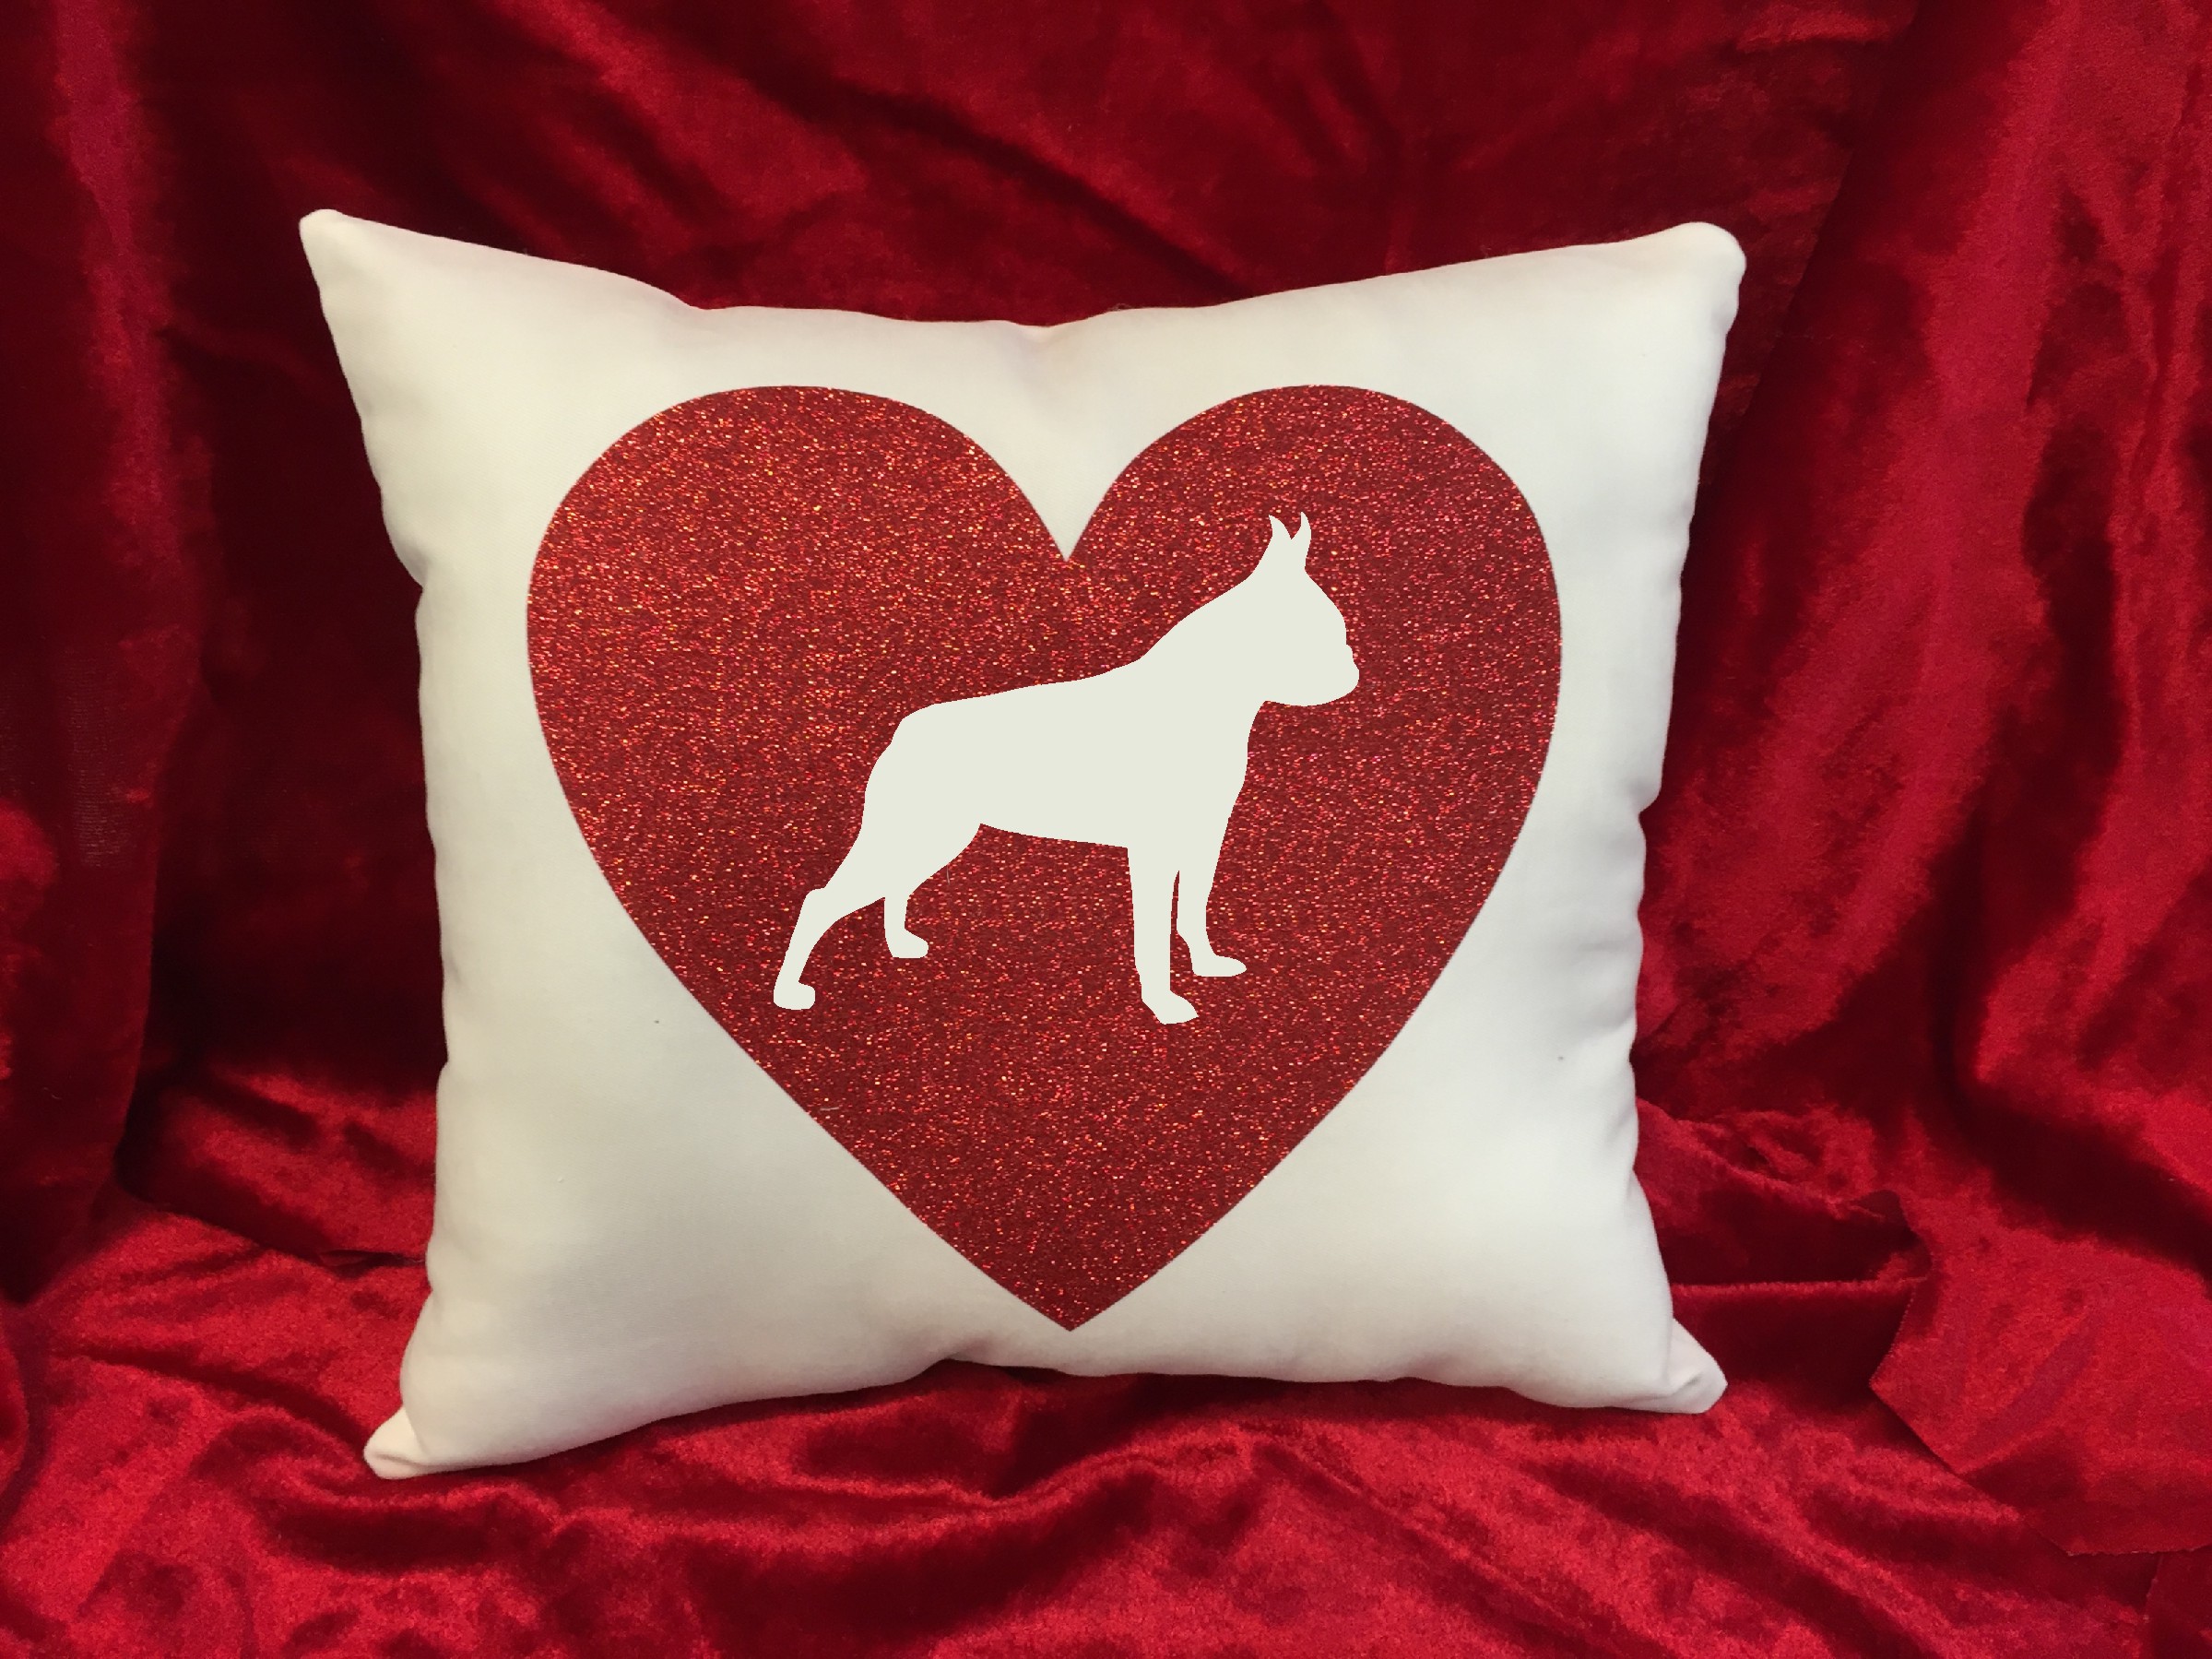 Dogs - Throw Pillow - Boston Terrier